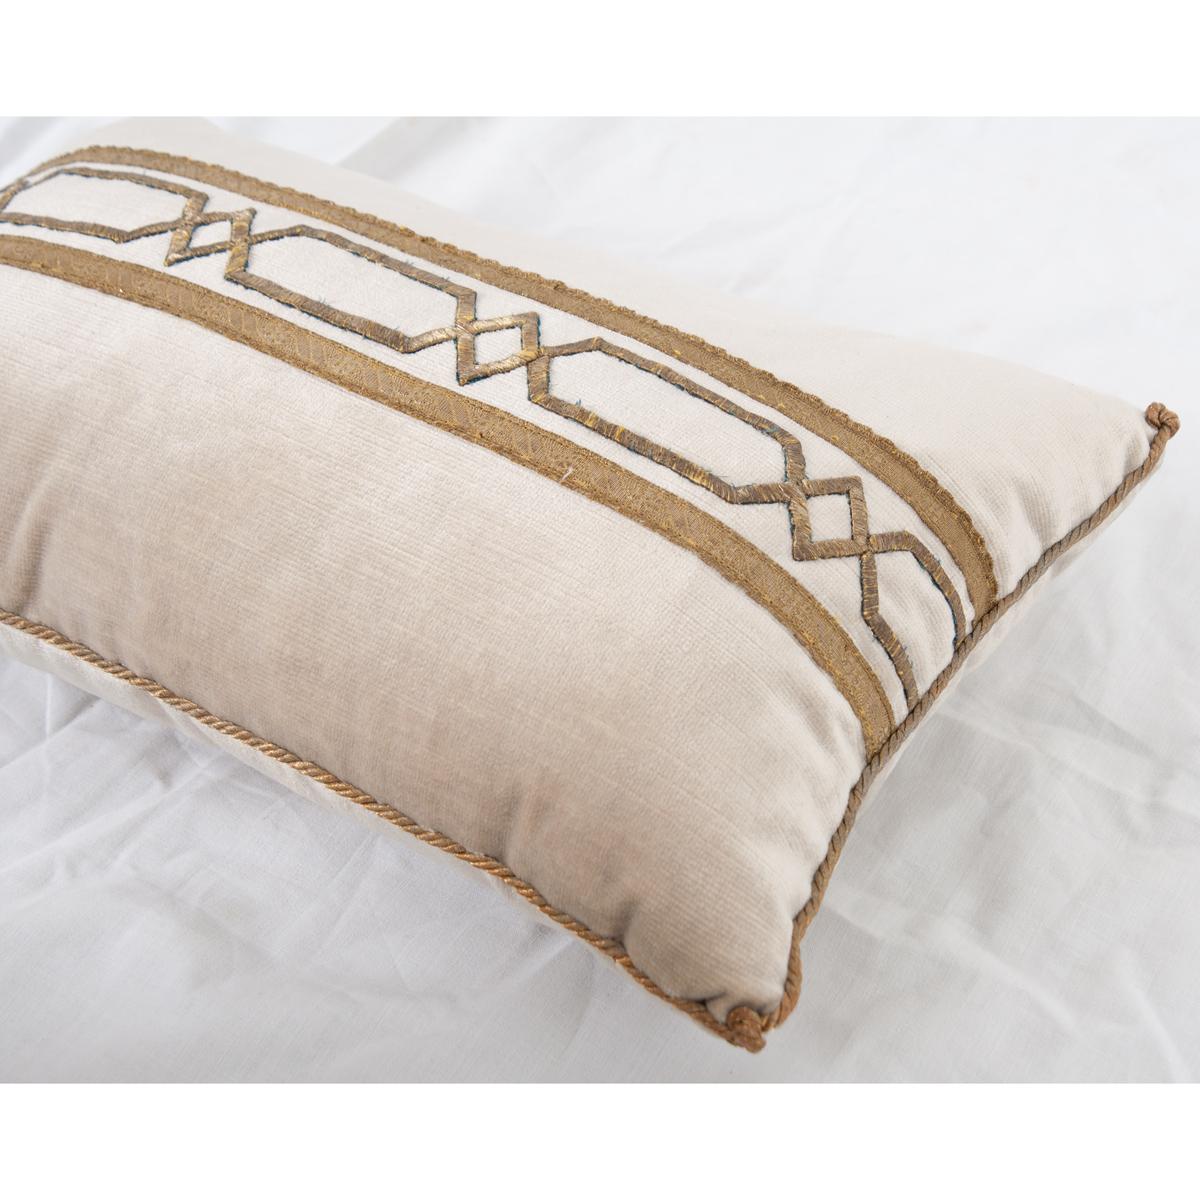 B. Viz Antique Textile Pillow In Good Condition For Sale In Baton Rouge, LA